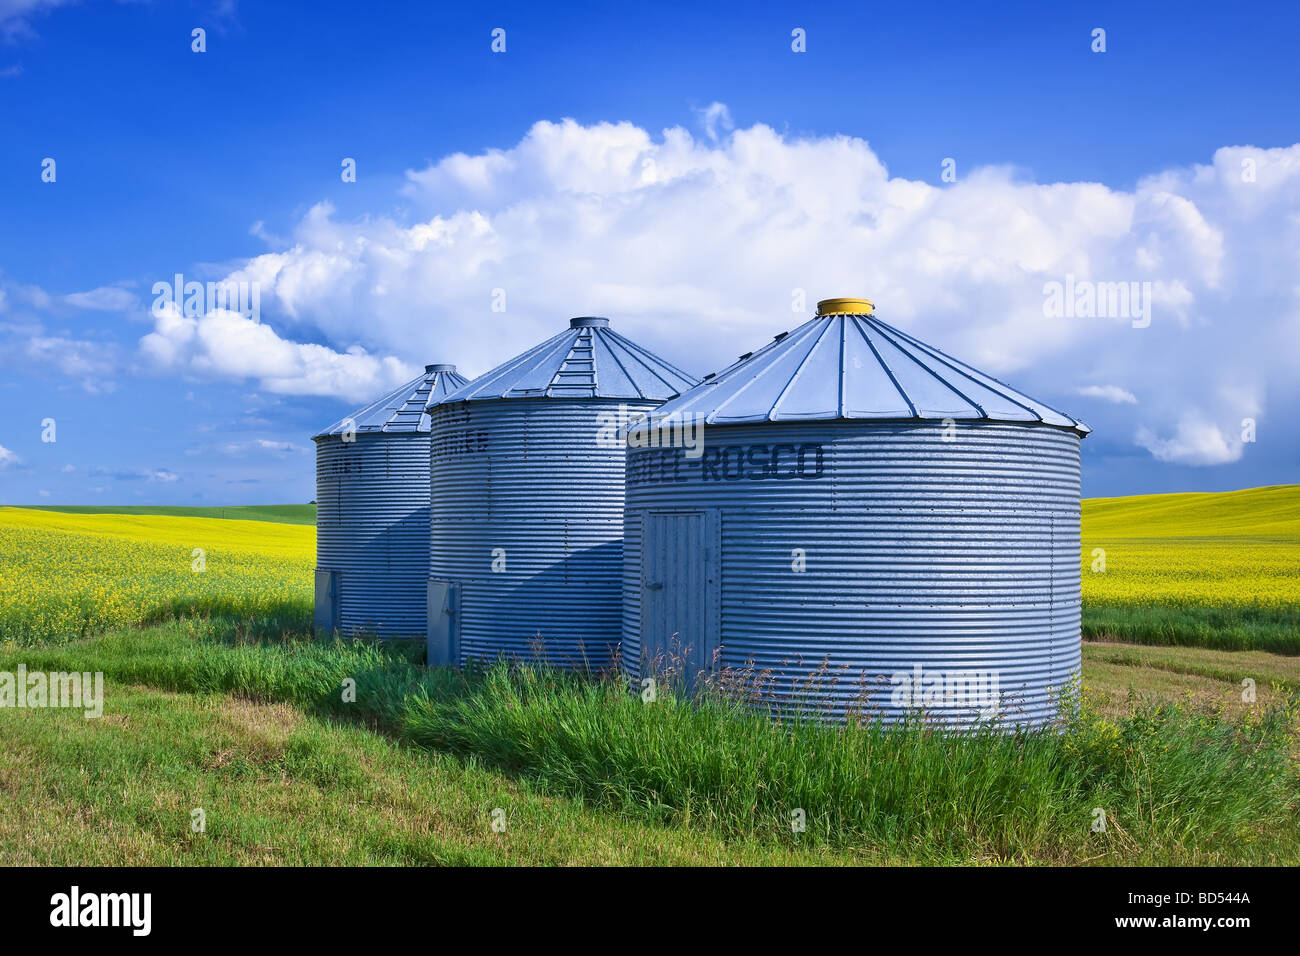 Silos à grains (Bins) avec champ de canola en arrière-plan, Prairies canadiennes, Pembina Valley, Manitoba, Canada. Banque D'Images